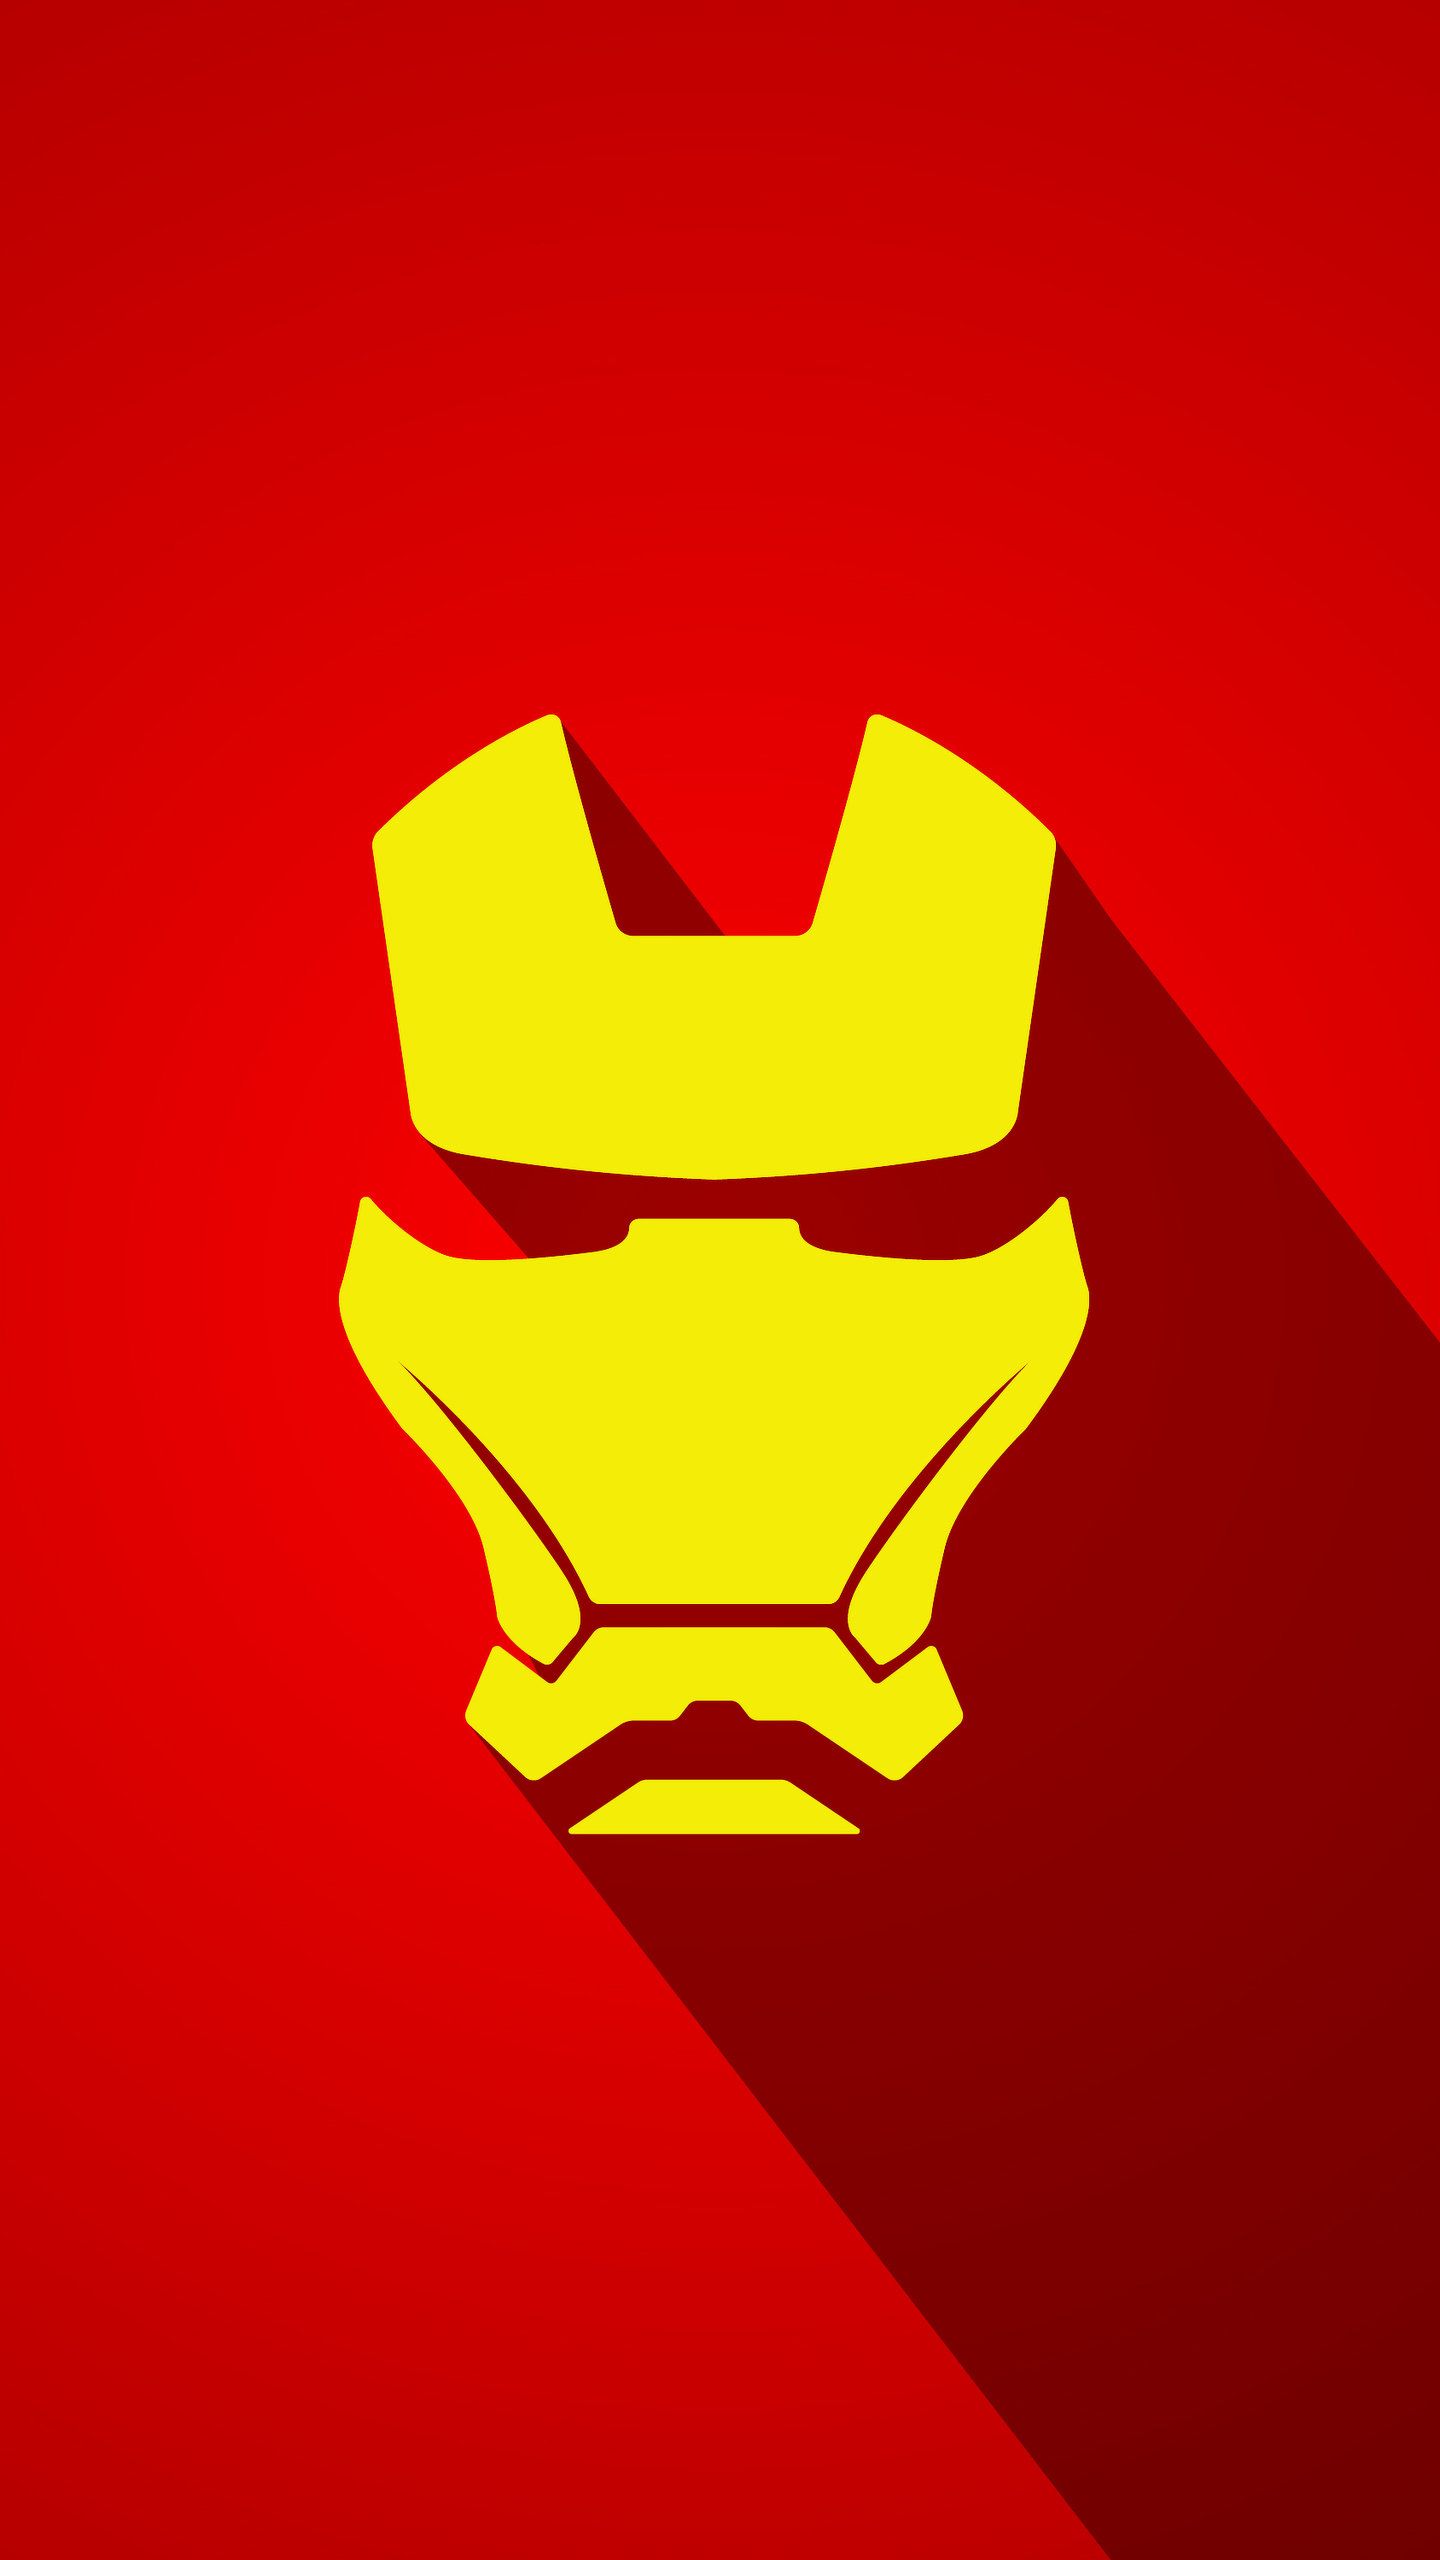 Iron Man Logo Hd - 1440x2560 Wallpaper 